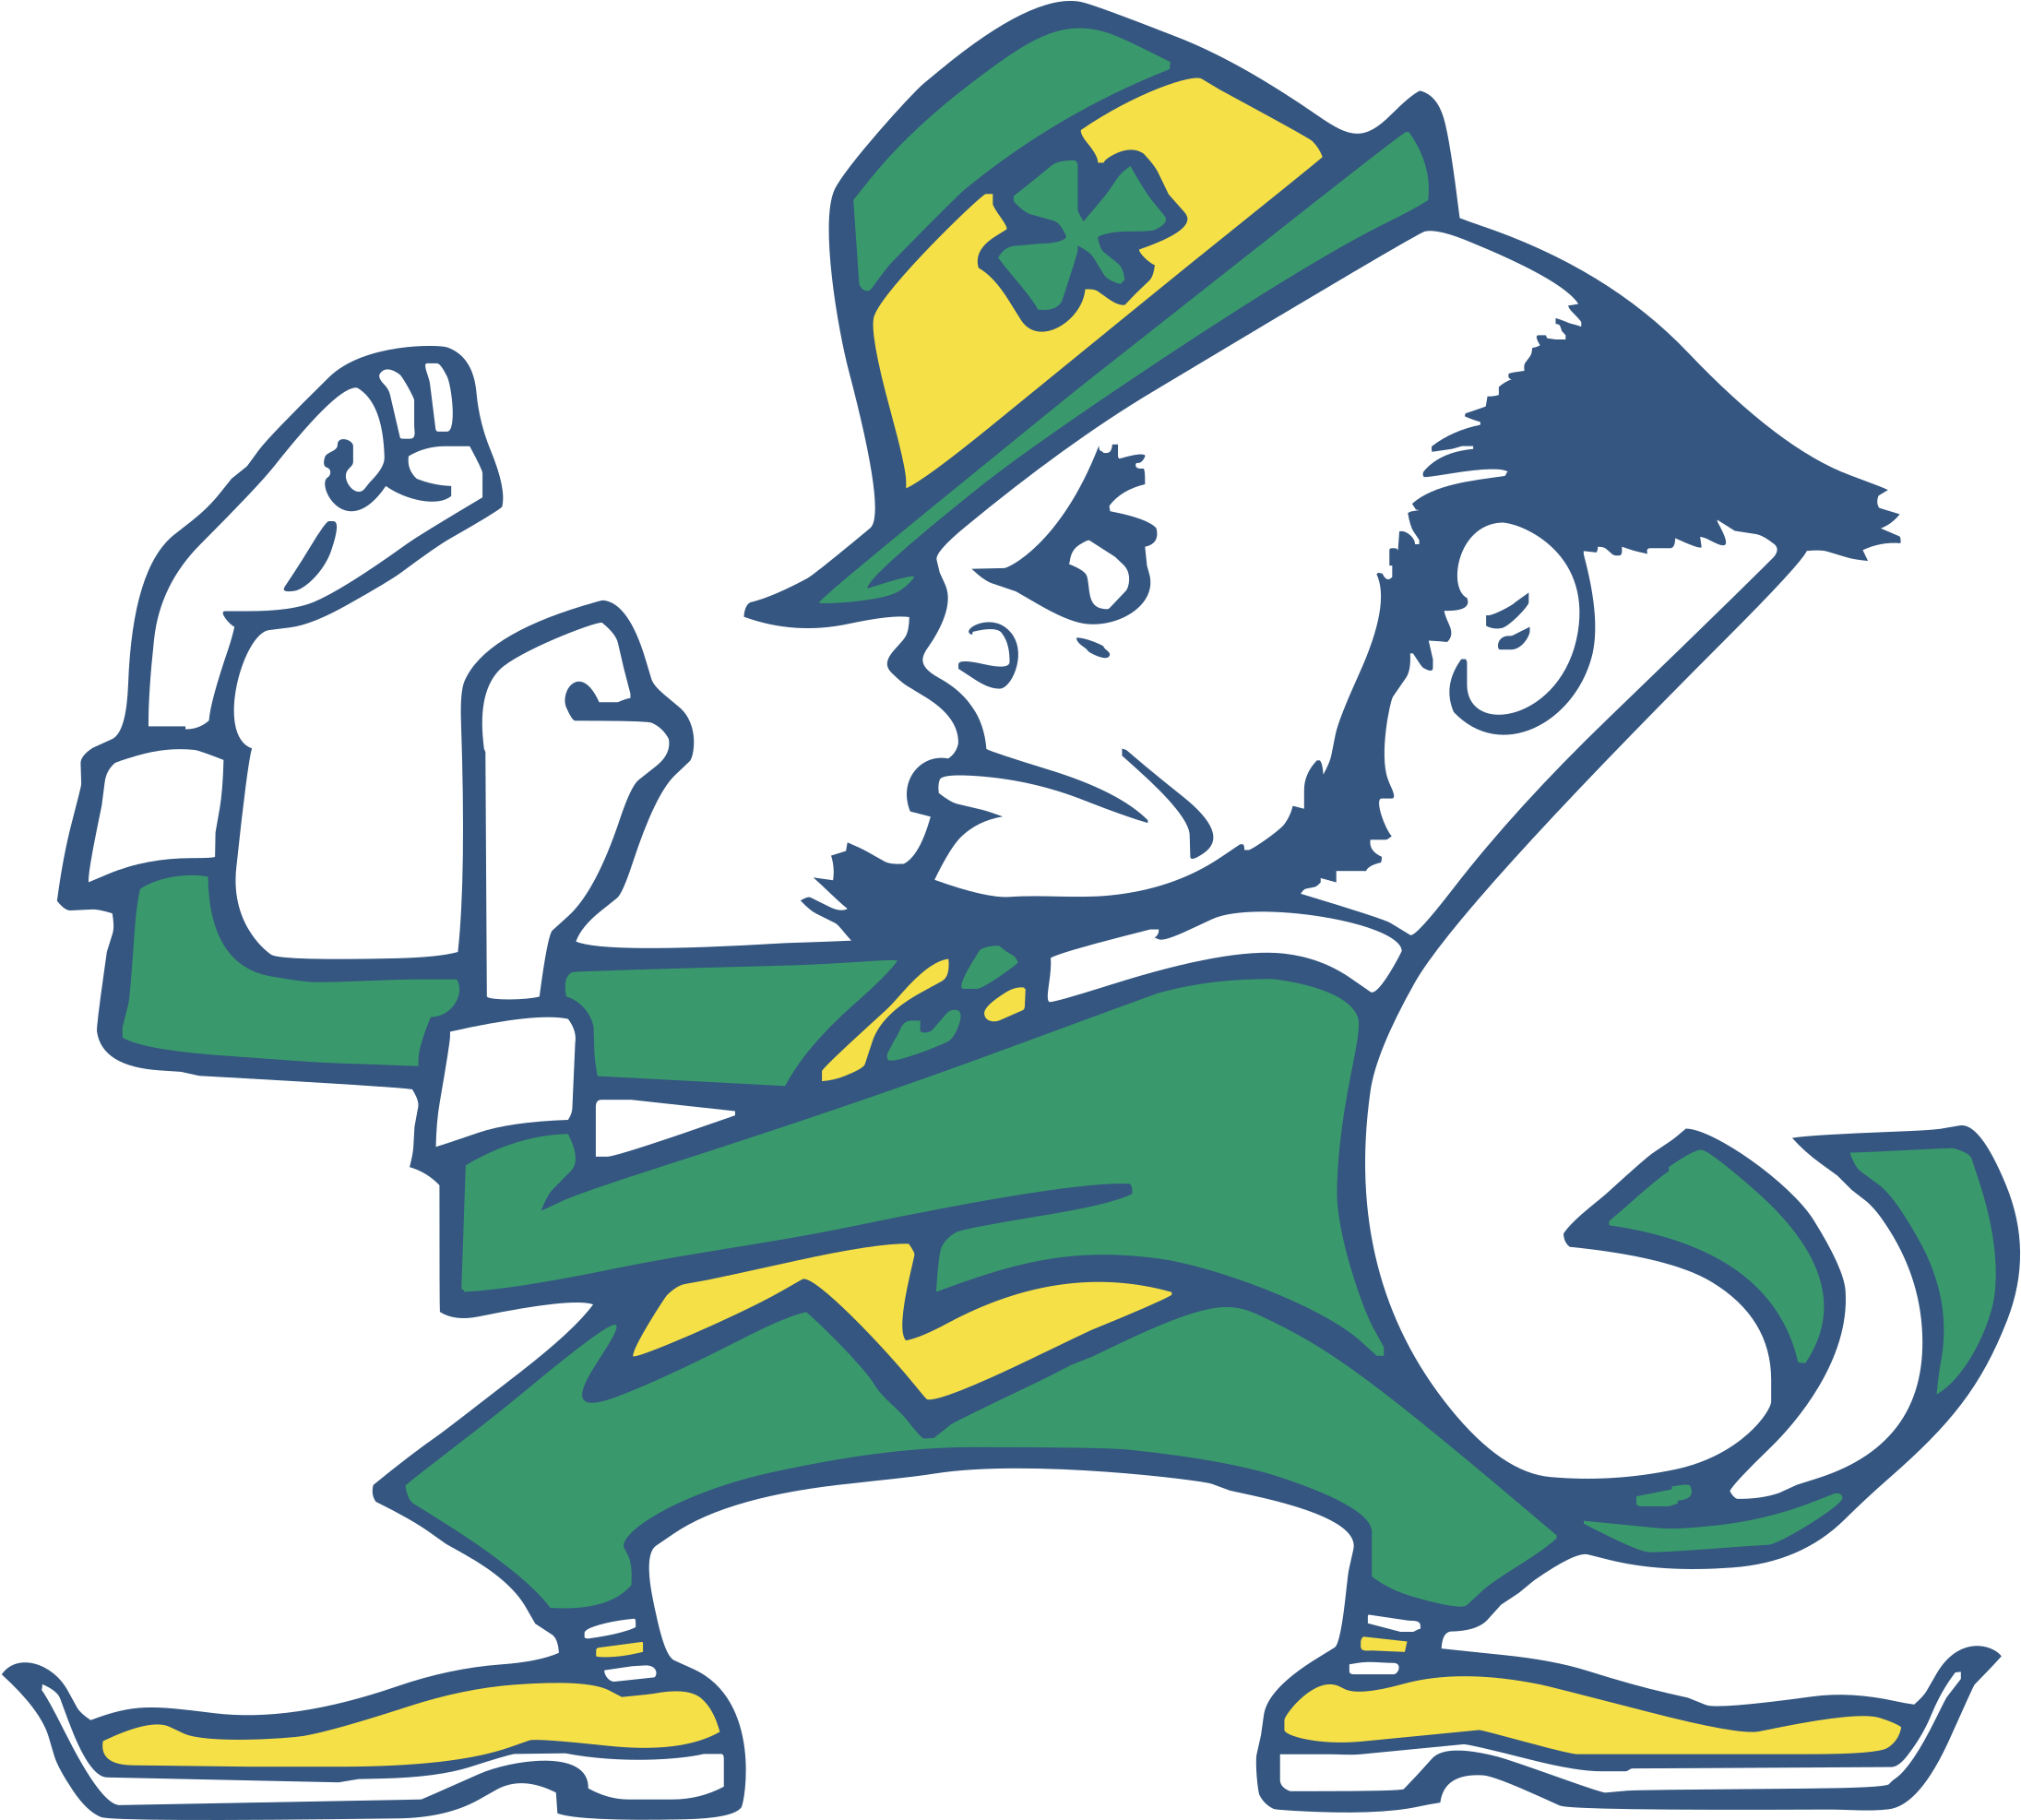 Notre Dame Fighting Irish Logo - Notre Dame Fighting Irish Mascot (2400x2400)